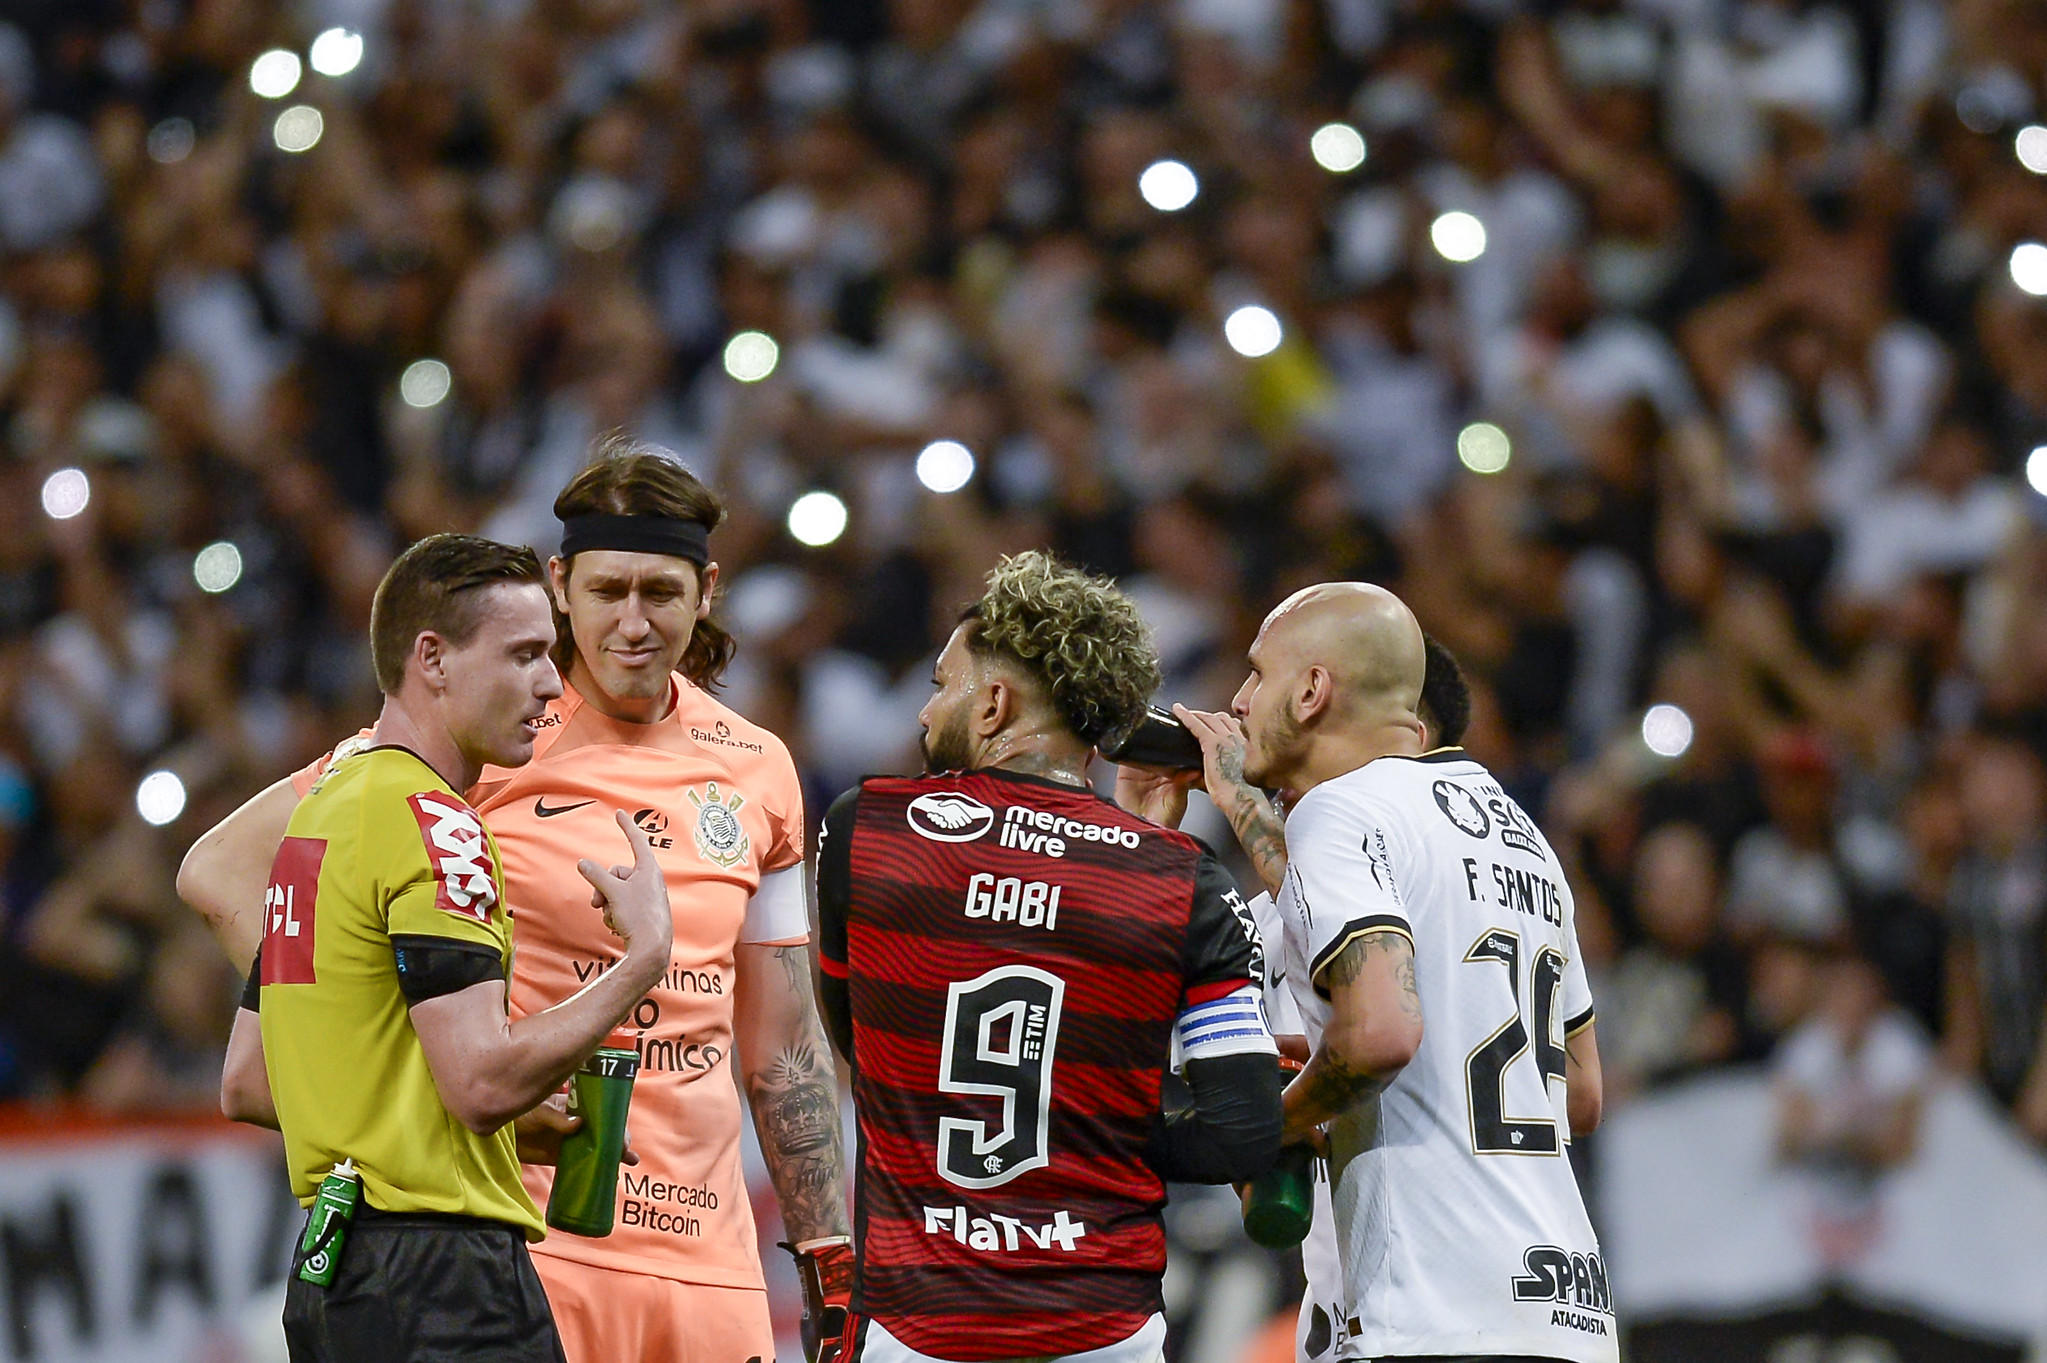 Corinthians x Flamengo: onde assistir, escalações e tudo sobre o confronto  - Placar - O futebol sem barreiras para você